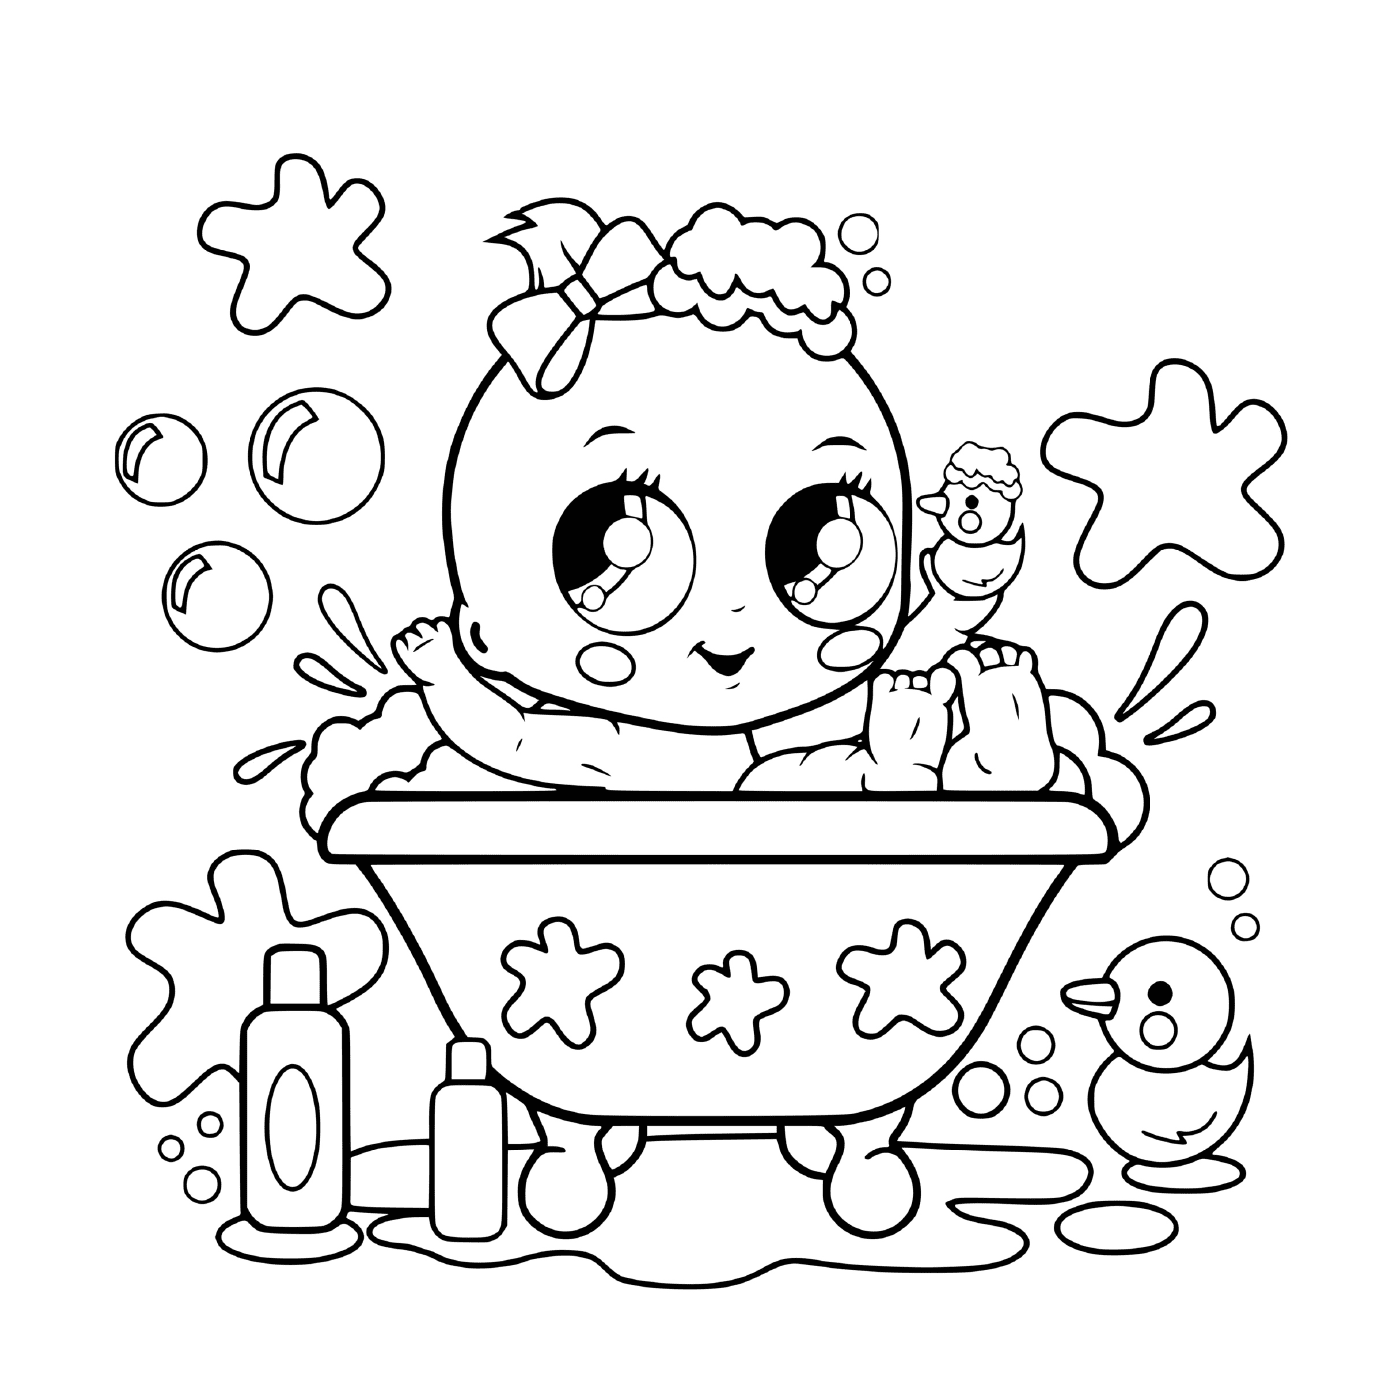   Un bébé dans une baignoire 